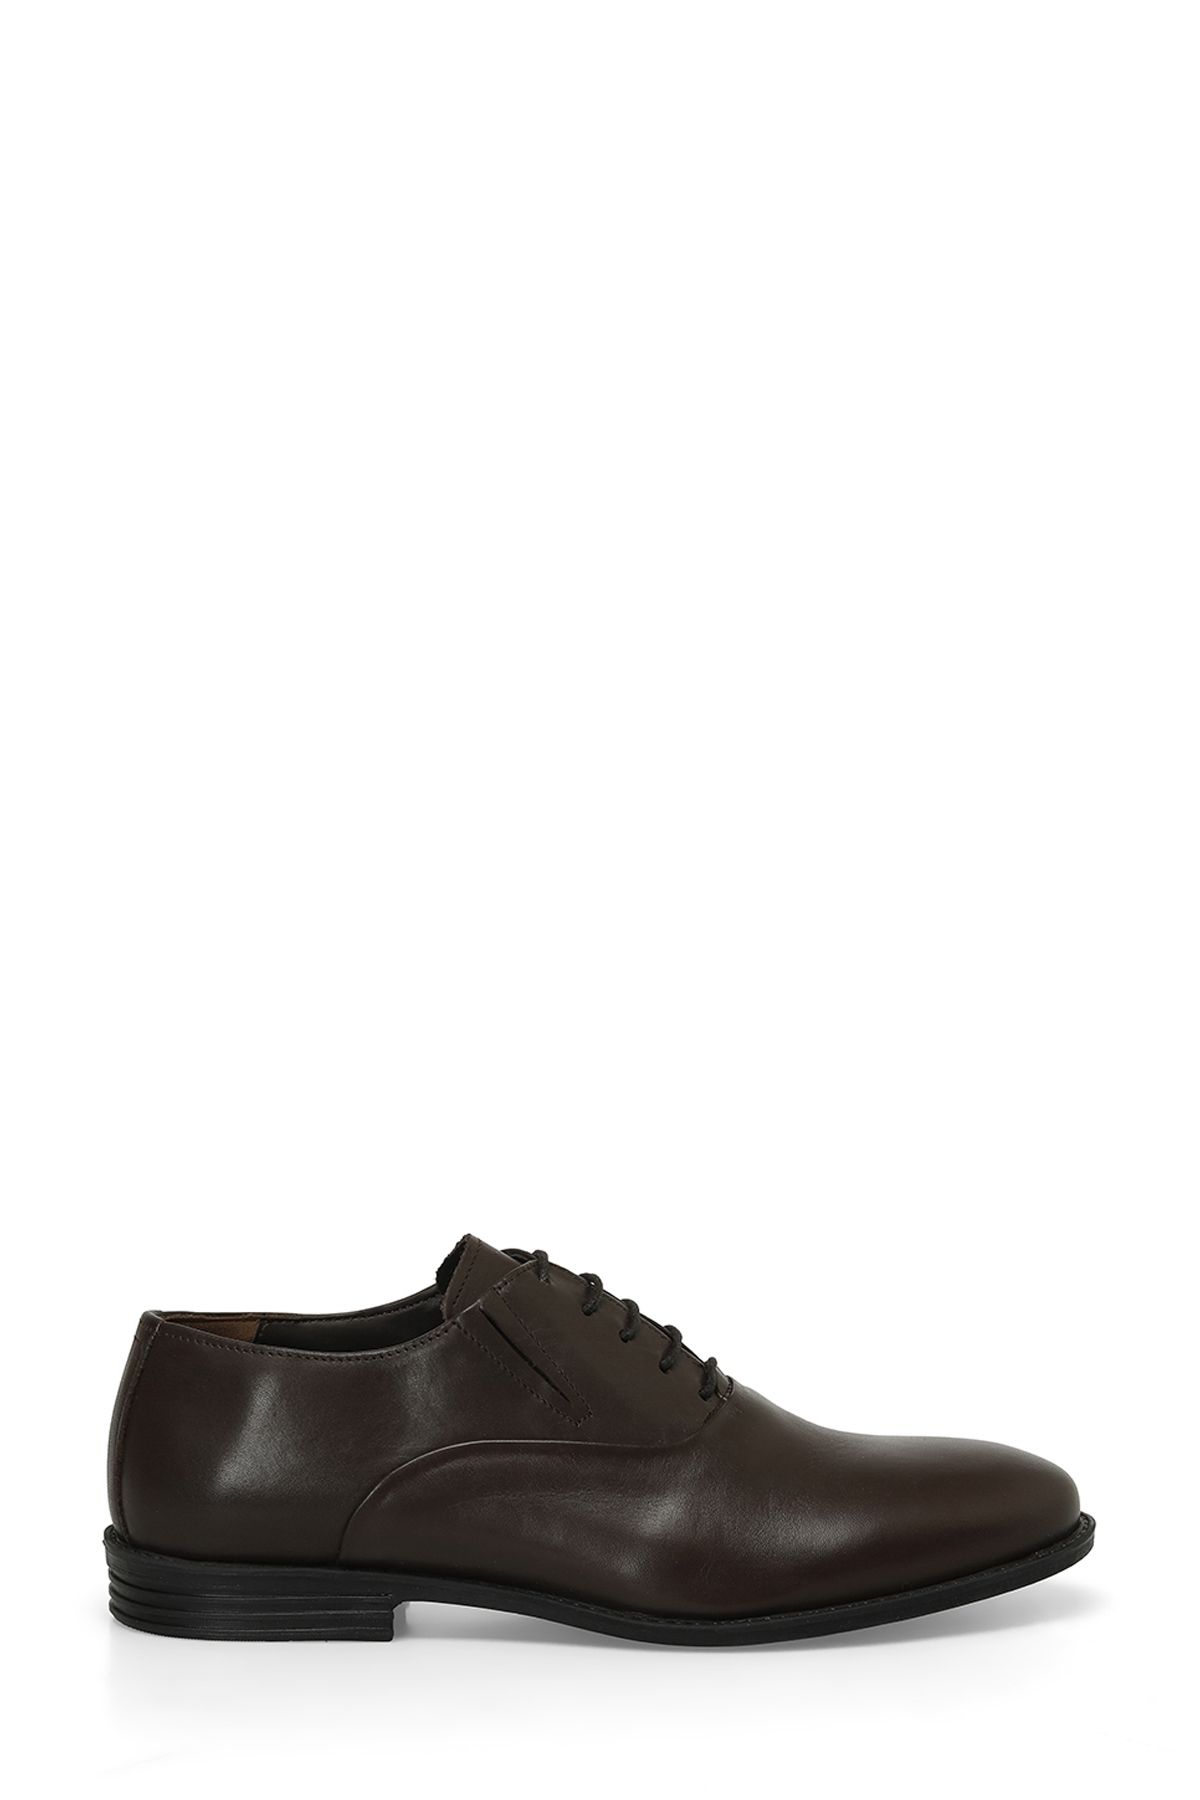 Garamond POLA 4FX Kahverengi Erkek Klasik Ayakkabı